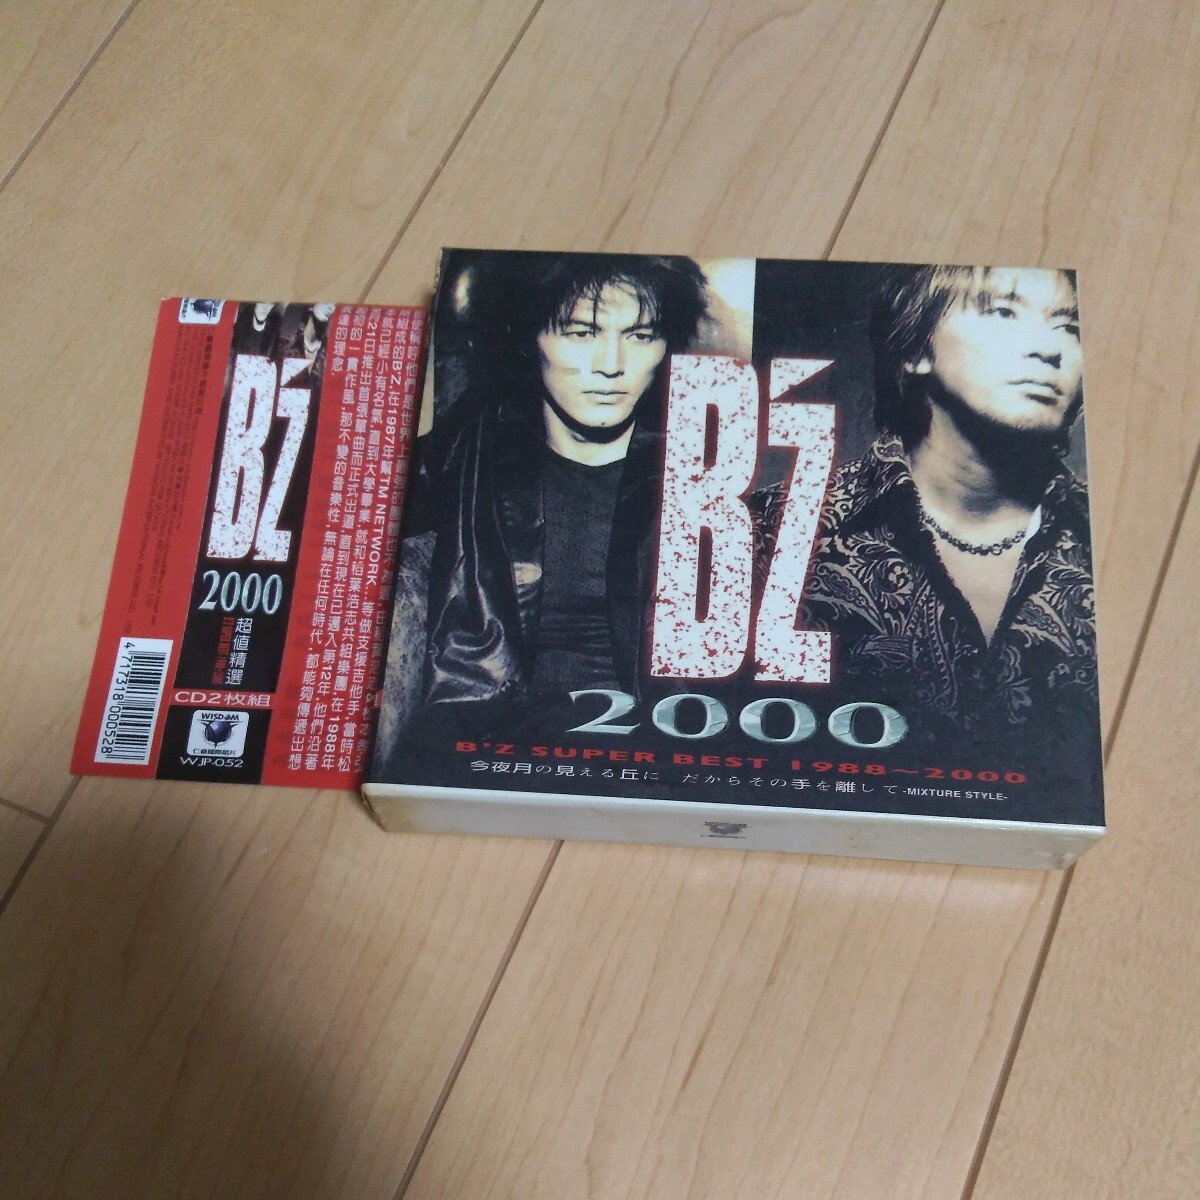 B'z B'z 2000 B'z SUPER BEST 1988-2000 ベスト アルバム CD 2枚組 輸入盤 レア 貴重 入手困難 コレクターズアイテム 稲葉浩志 松本孝弘の画像1